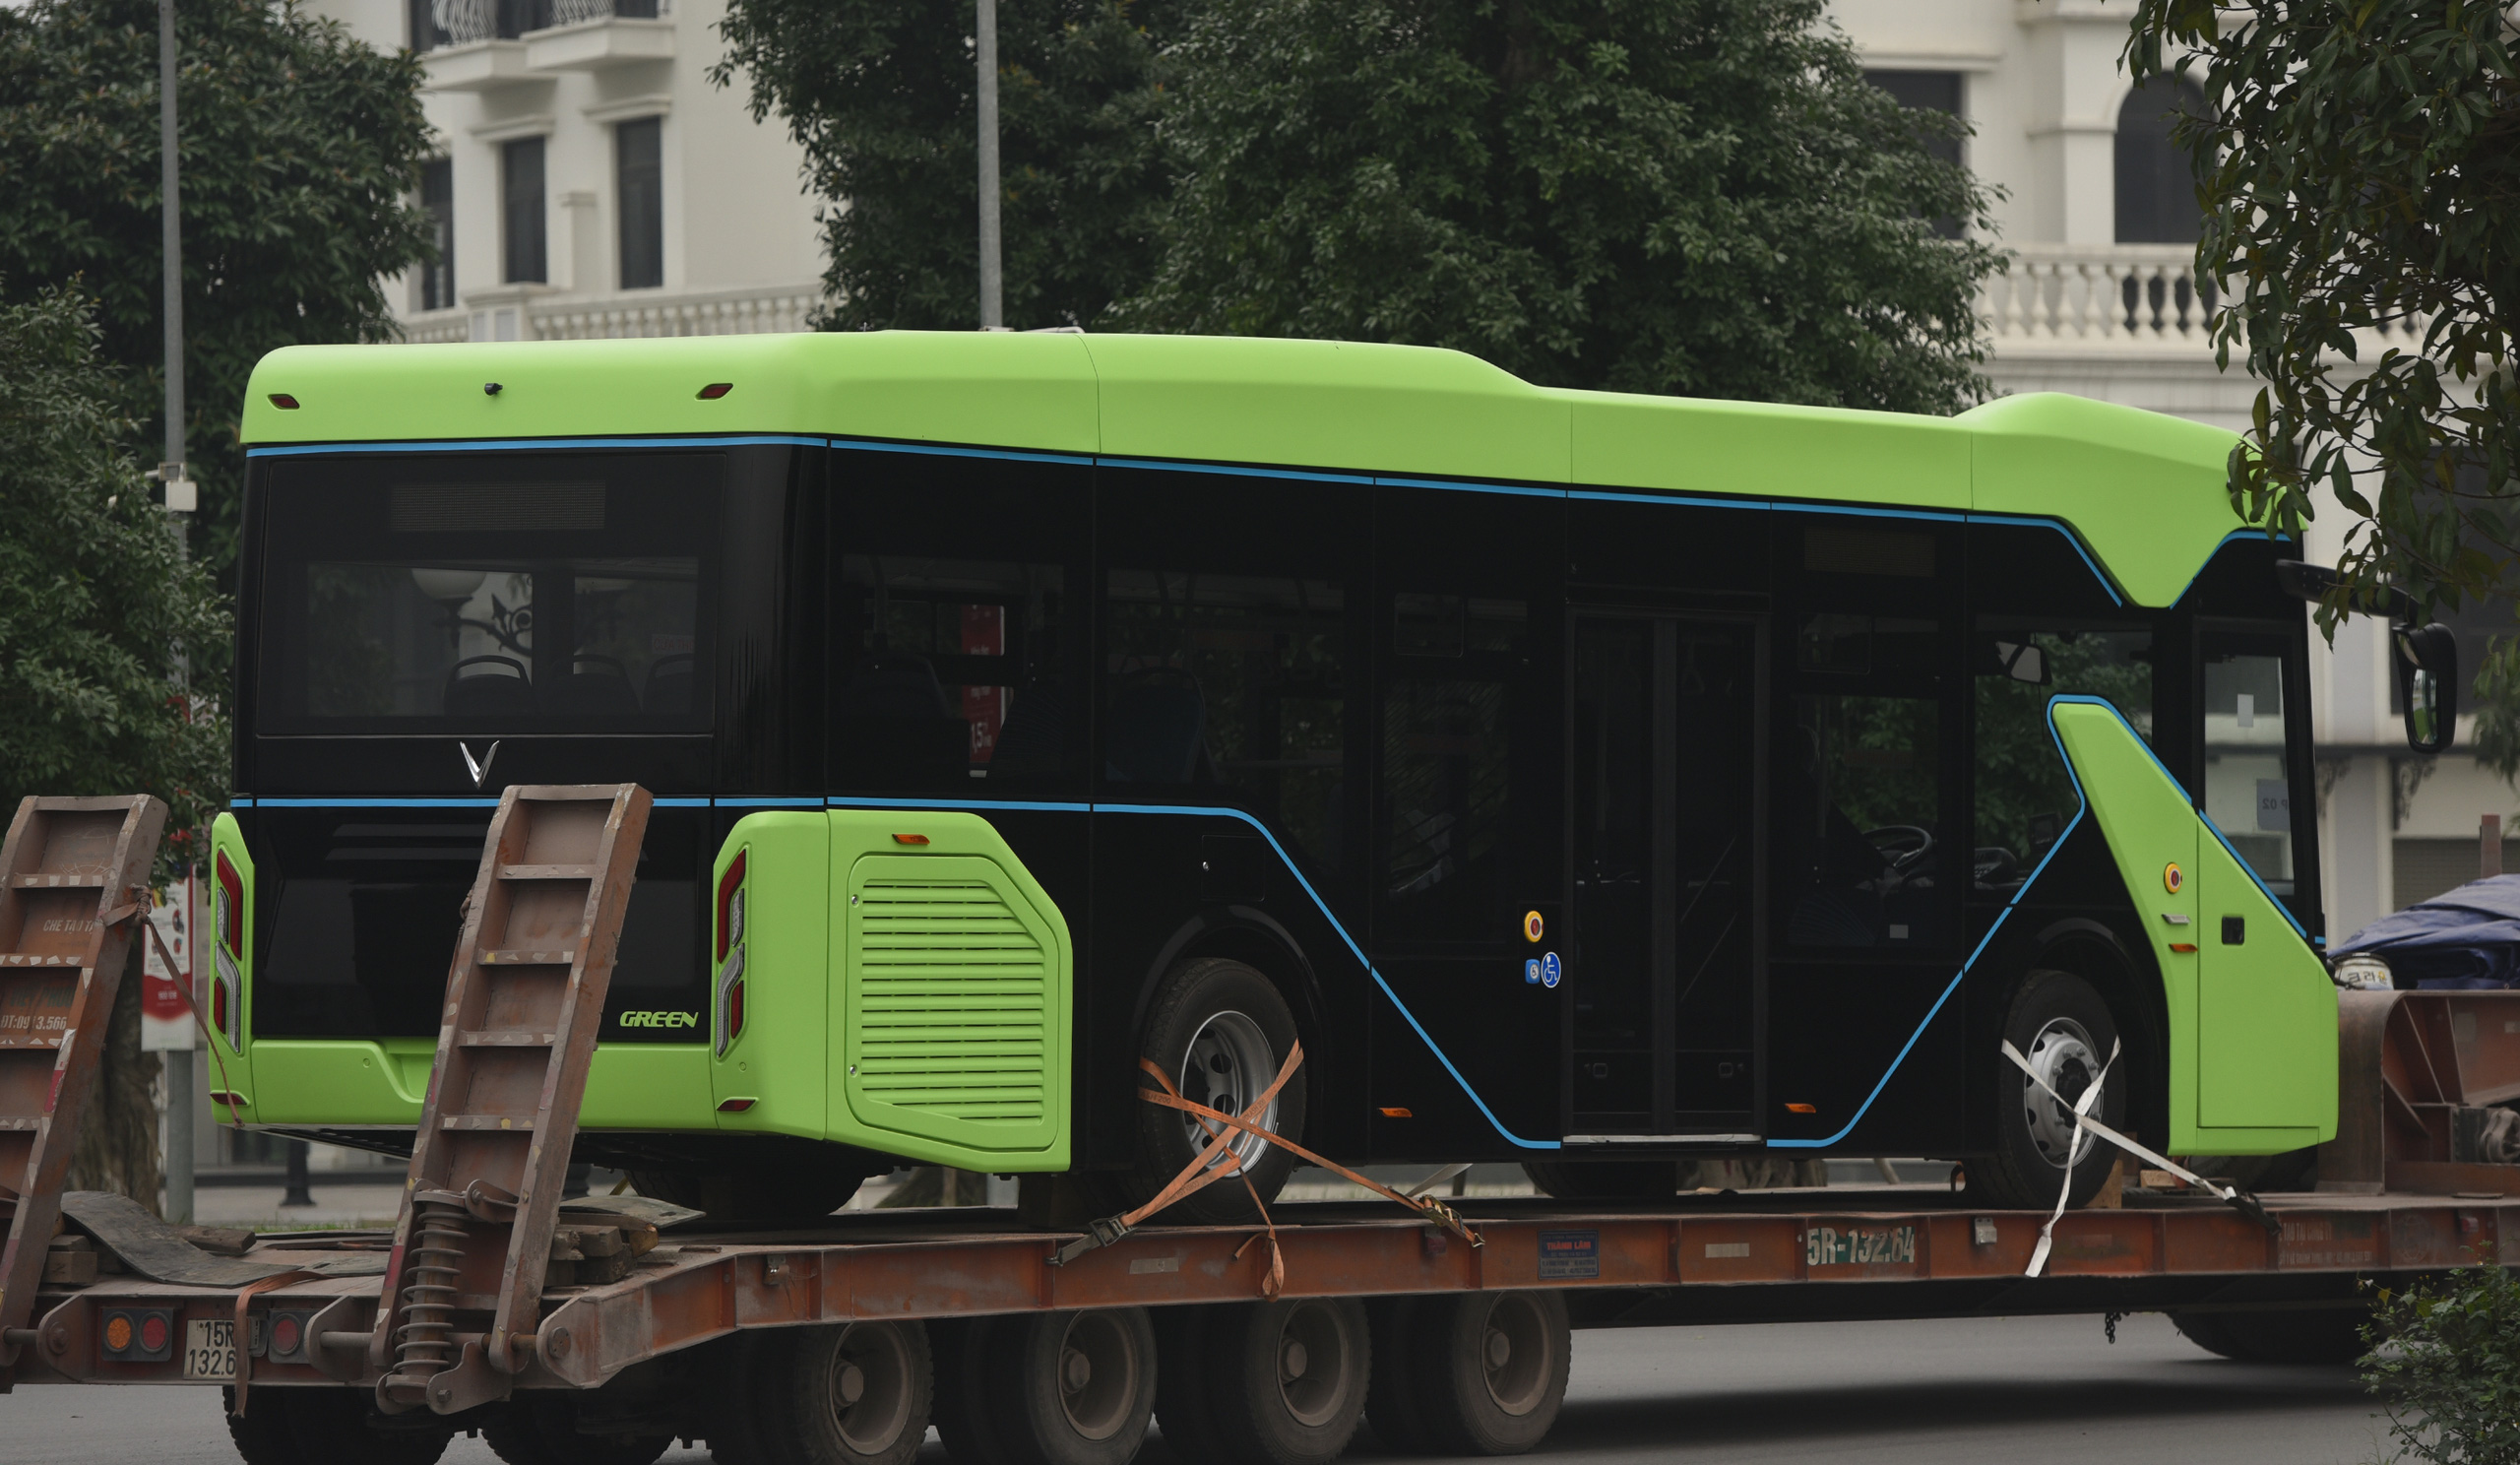 Xe bus điện VinFast mang lại trải nghiệm đi đường mới lạ và thú vị. Với công nghệ tiên tiến, khách hàng có thể trải nghiệm không chỉ được dịch vụ vận chuyển mà còn được trải nghiệm cảm giác đặc biệt từ chính phương tiện. Bảo vệ môi trường hơn cùng với chất lượng vượt trội, các chuyến đi bằng xe bus điện VinFast sẽ đáp ứng mọi nhu cầu của bạn.